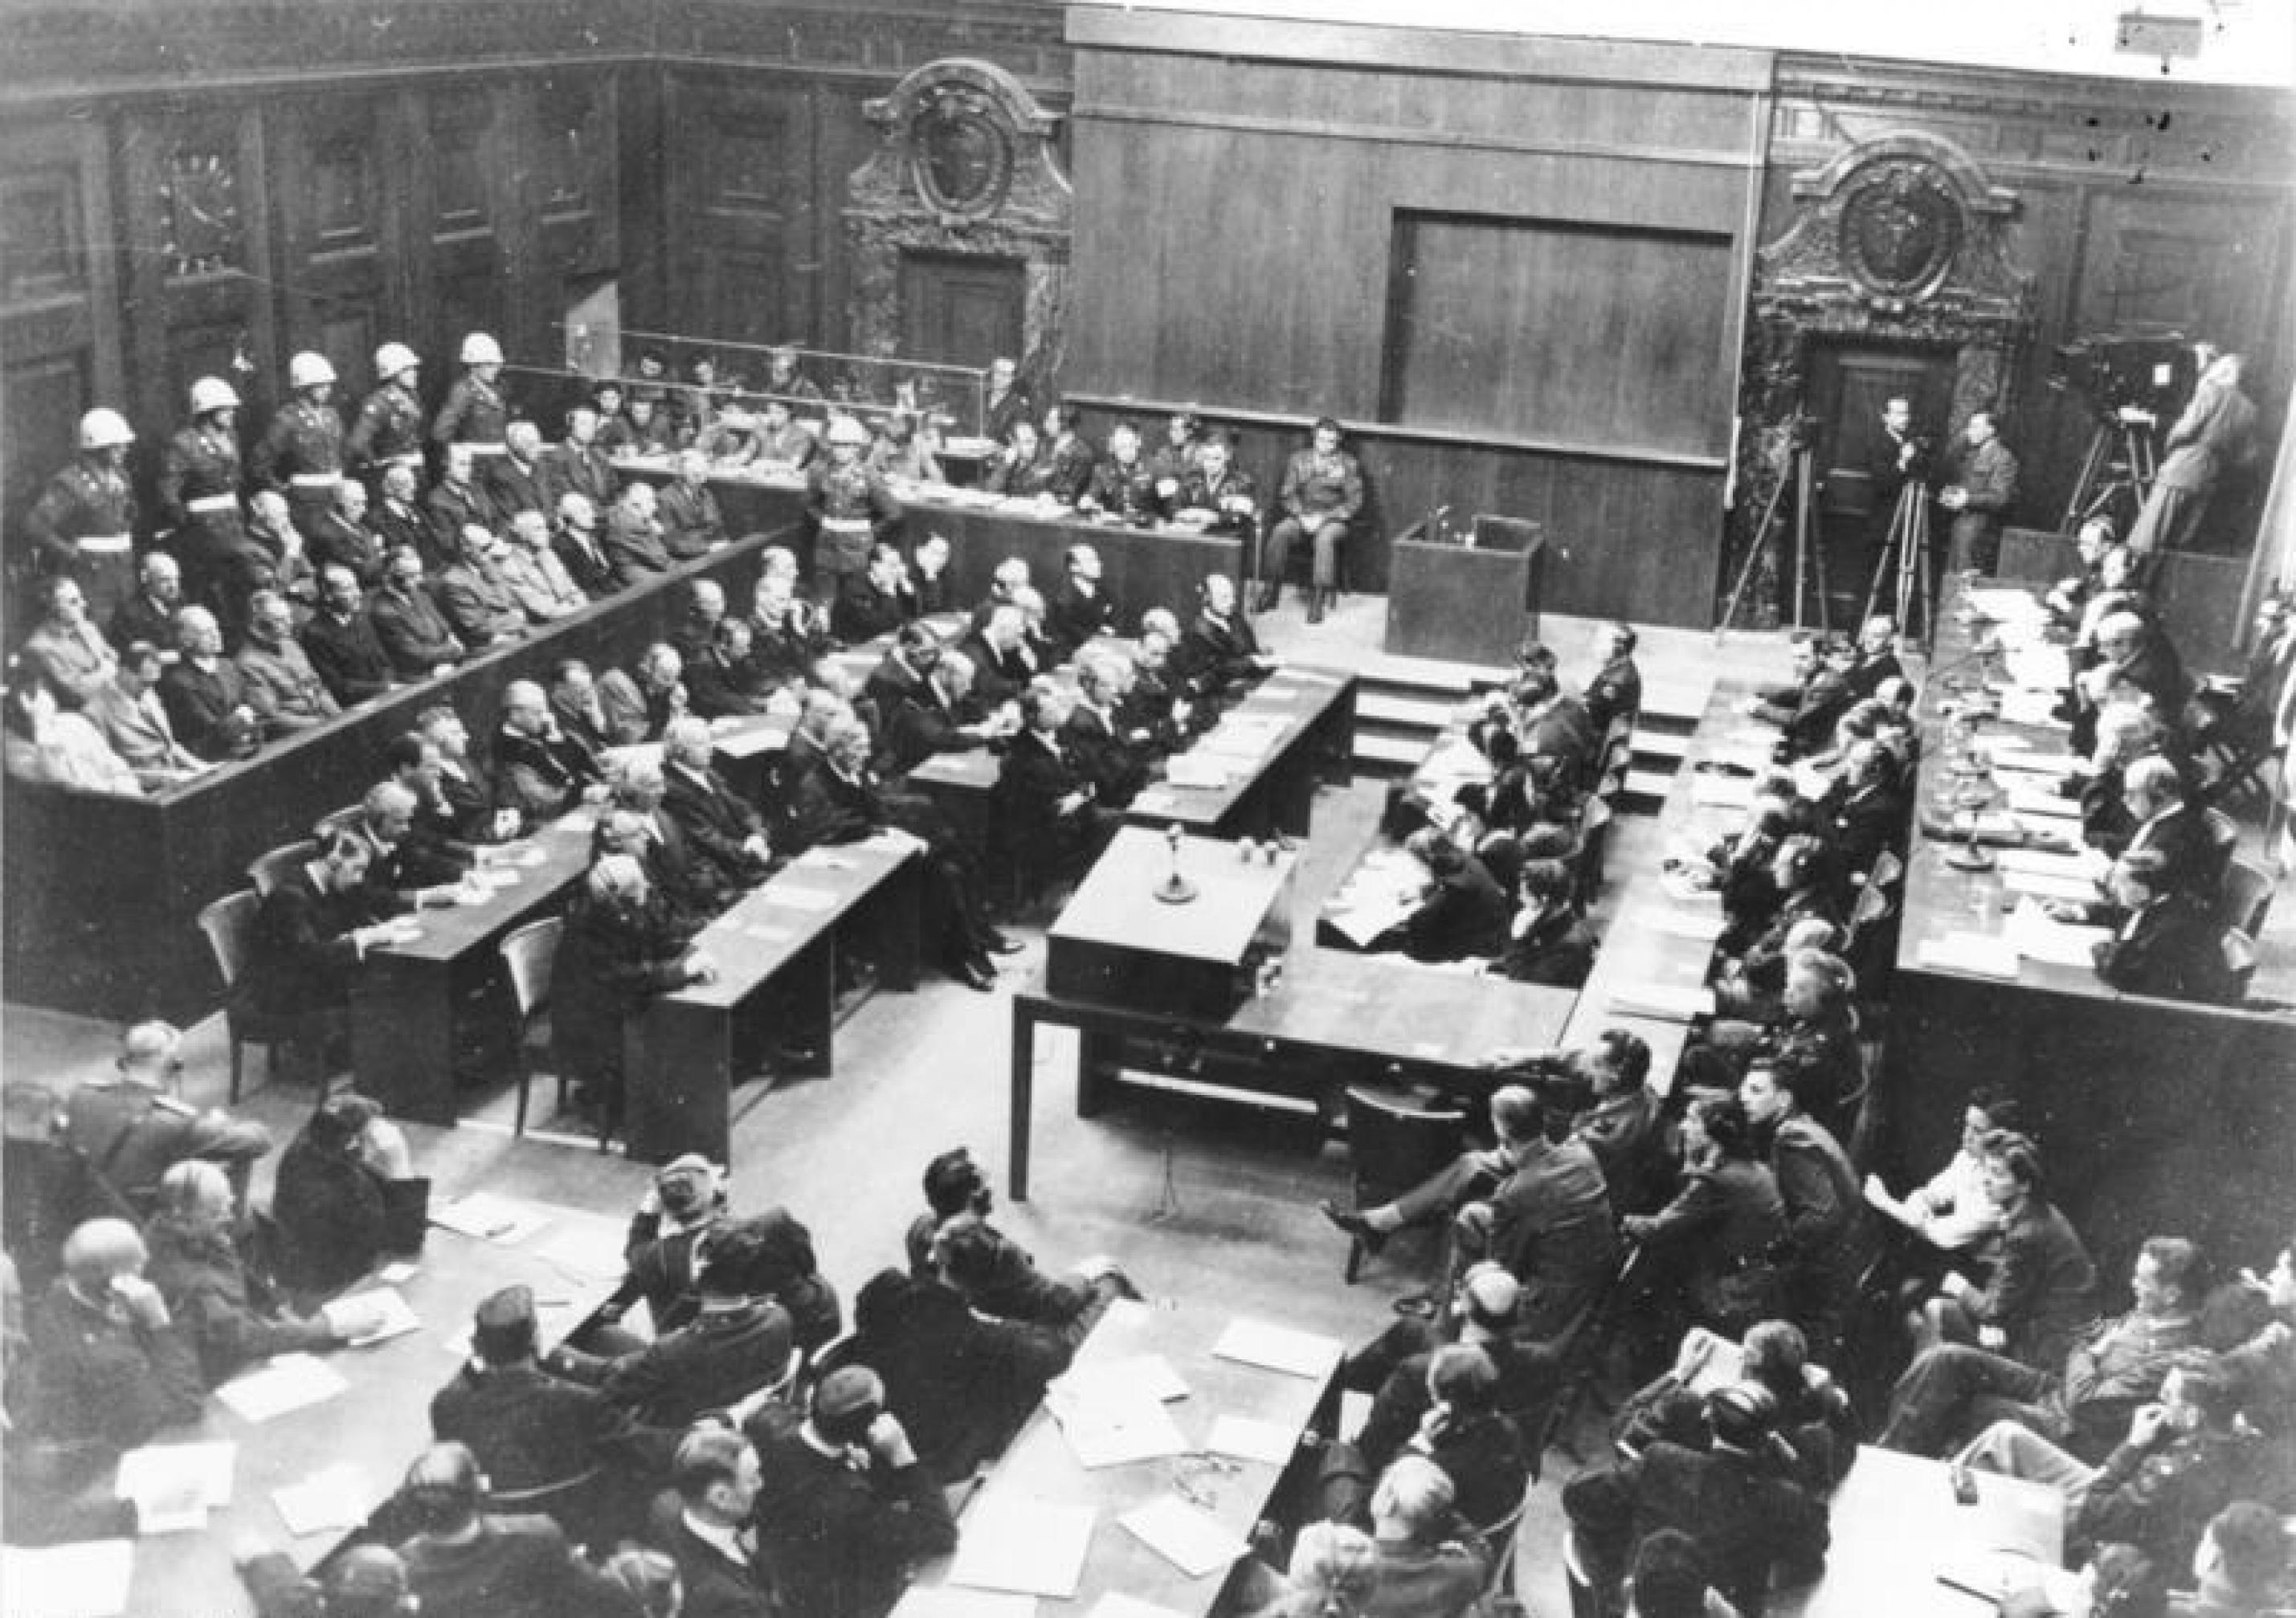 Das Schwarzweiß-Bild zeigt au der Vogelperspektive einen Gerichtssaal. Links sind die Angeklagten zu sehen, rechts die Richterbank.